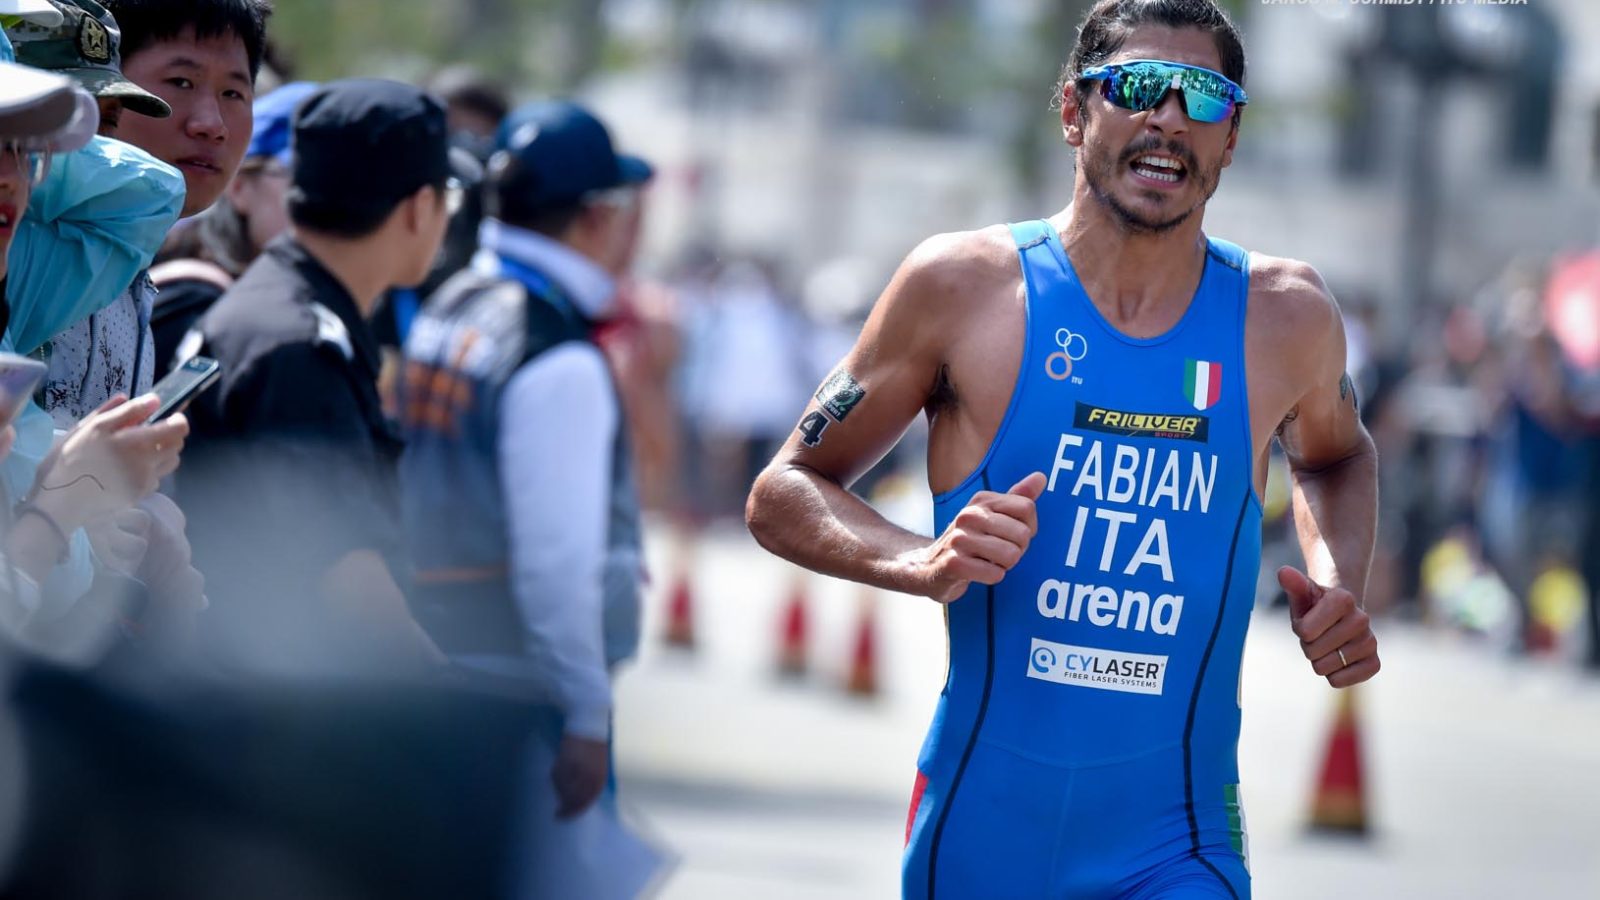 Alessandro Fabian solo 15° in Coppa del Mondo di triathlon